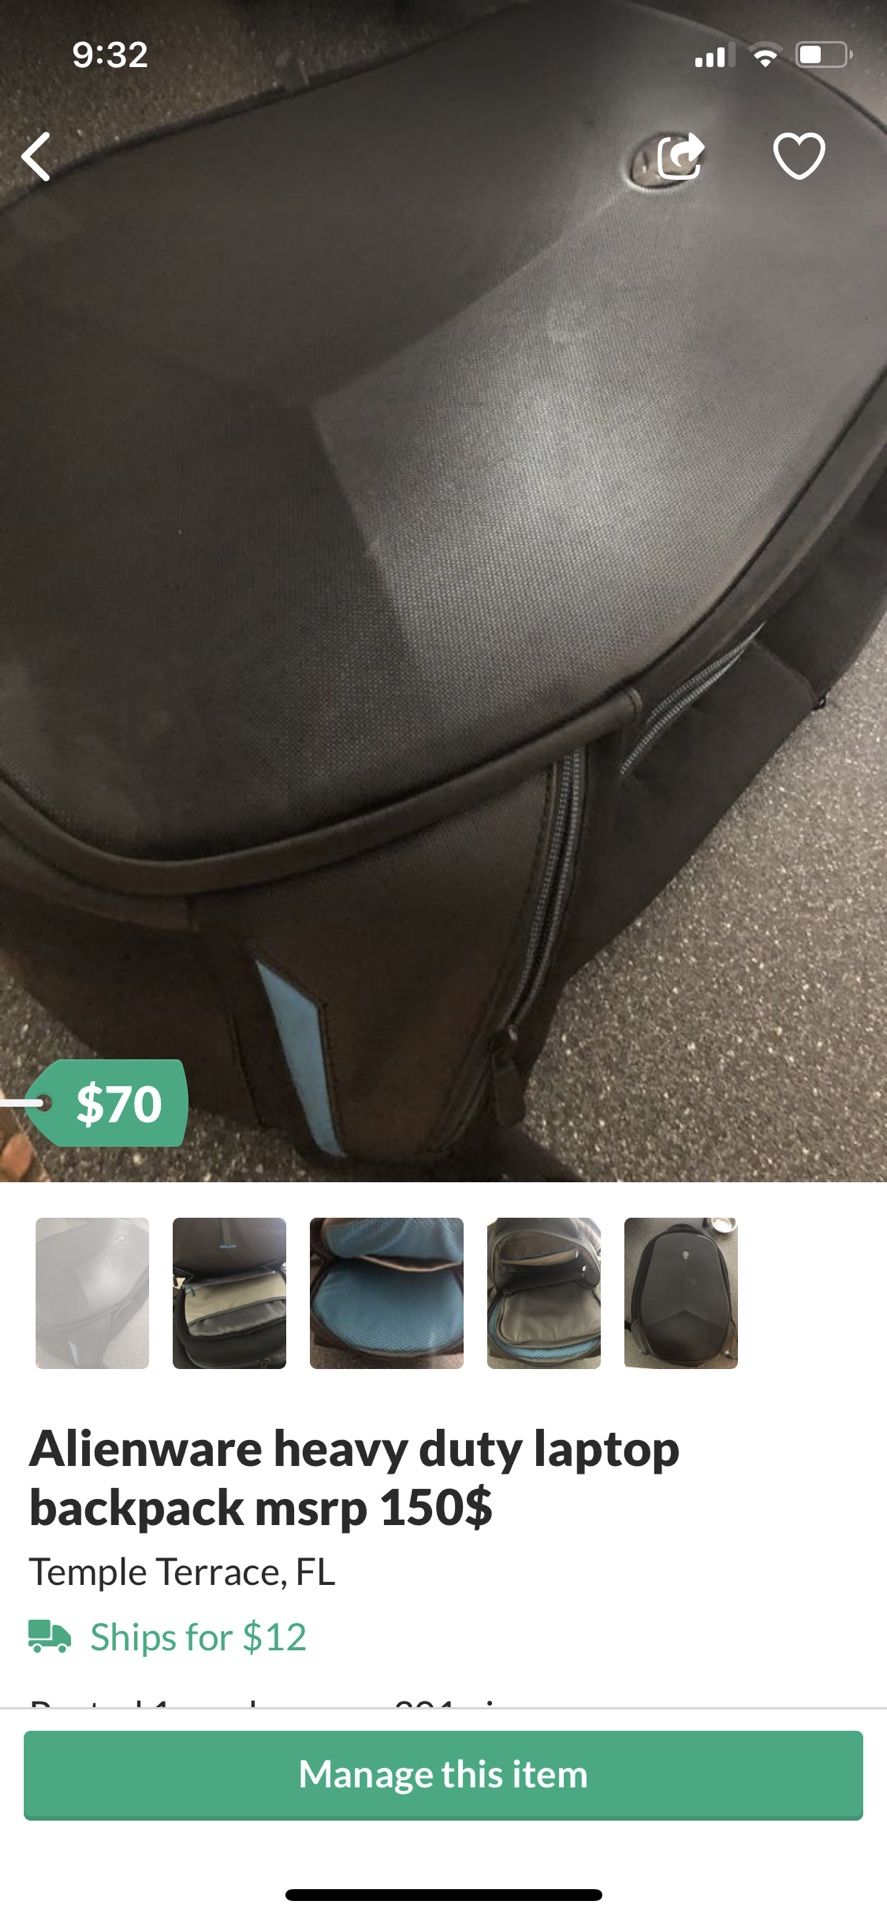 Alienware heavy duty laptop backpack msrp 150$